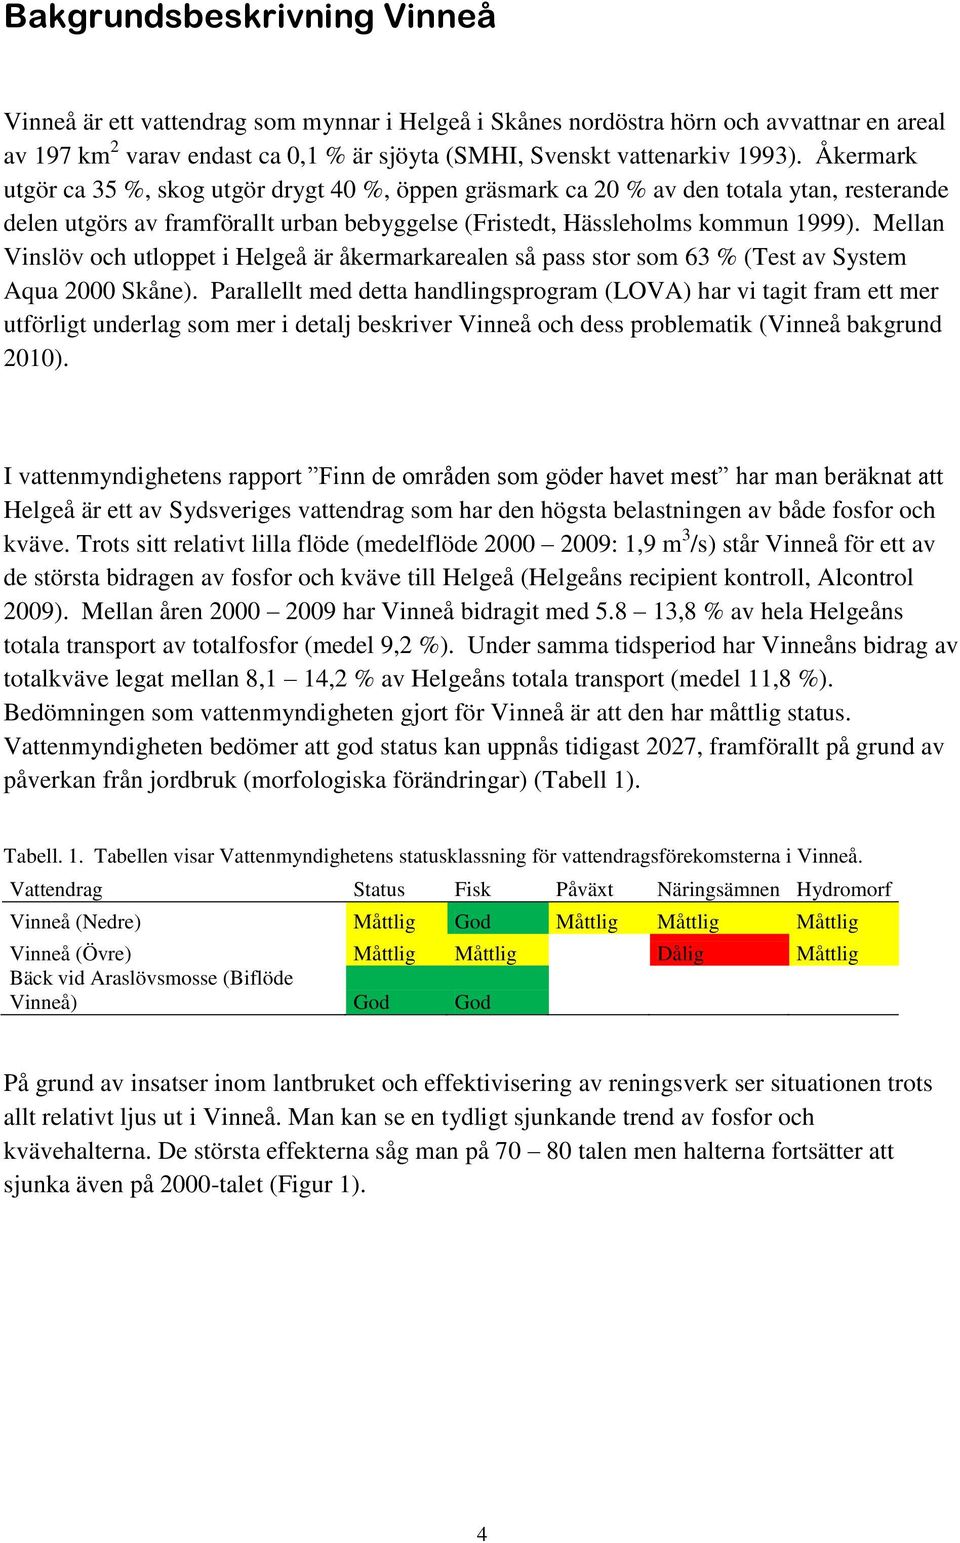 Mellan Vinslöv och utloppet i Helgeå är åkermarkarealen så pass stor som 63 % (Test av System Aqua 2000 Skåne).